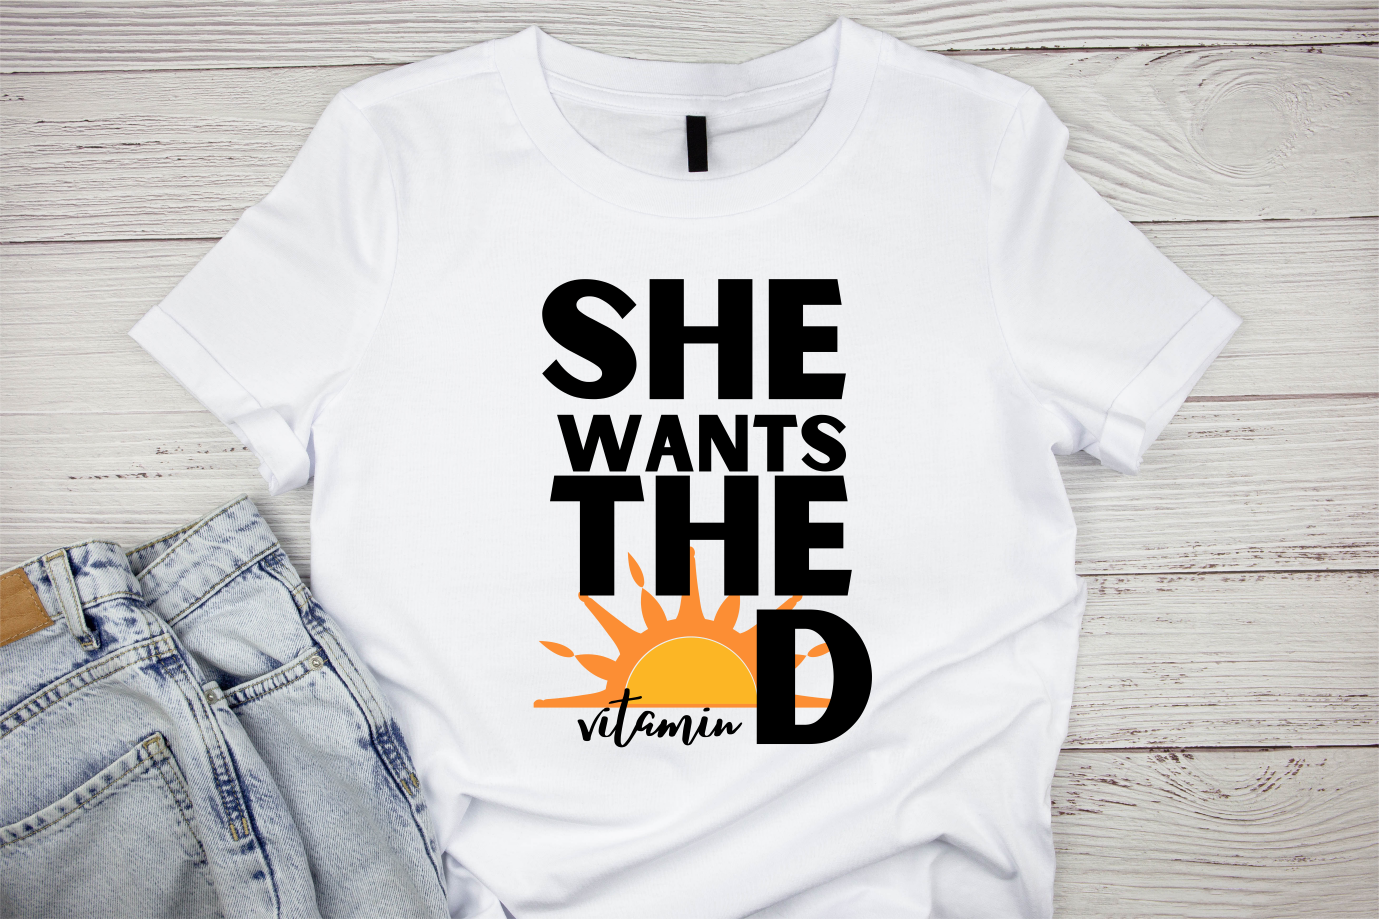 She Wants The [Vitamin] D Shirt